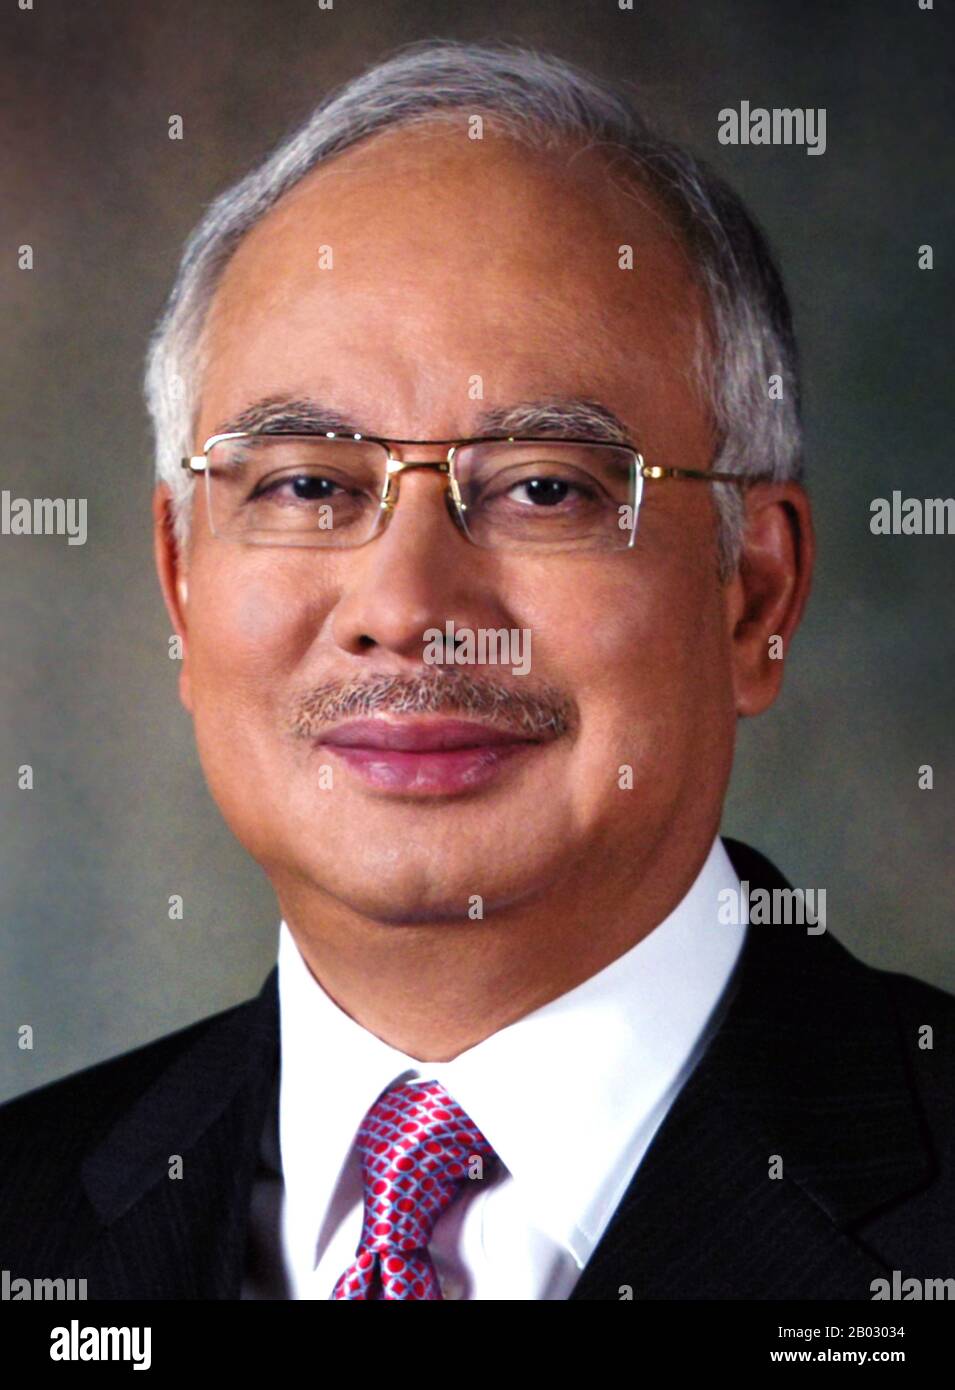 Dato' Sri Haji Mohammad Najib bin Tun Haji Abdul Razak (né le 23 juillet 1953) est le sixième et actuel premier ministre de Malaisie. Il a été assermenté le 3 avril 2009 pour succéder à Abdullah Ahmad Badawi. Il est le président de l'Organisation nationale des Malays Unis, le principal parti de la coalition Barisan Nasional au pouvoir en Malaisie. Banque D'Images